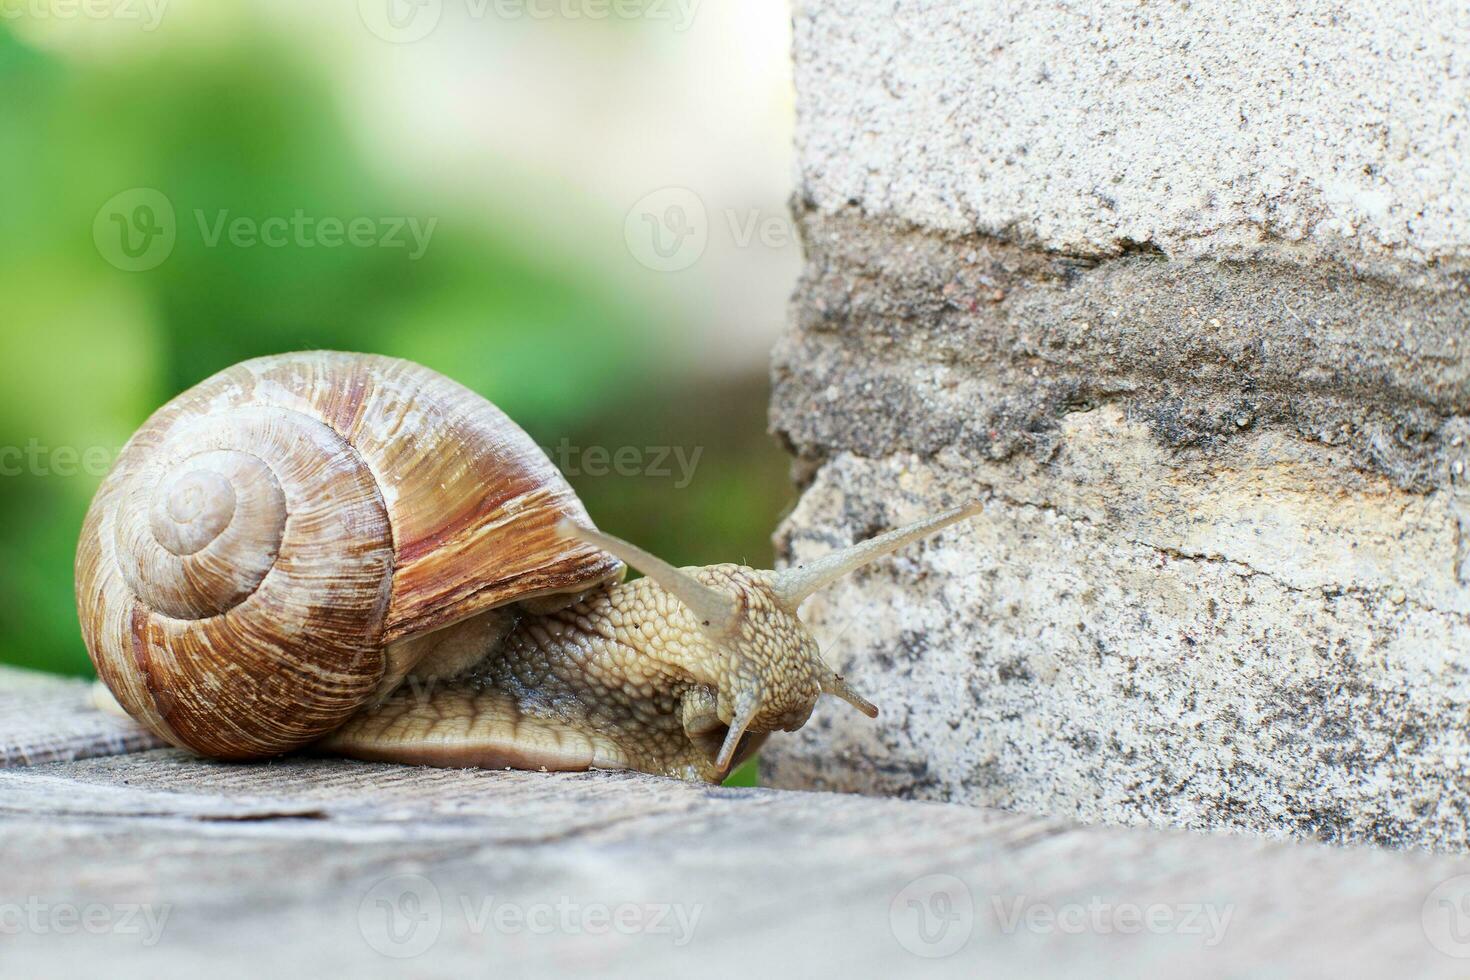 le escargot est escalade le mur dans le jardin photo